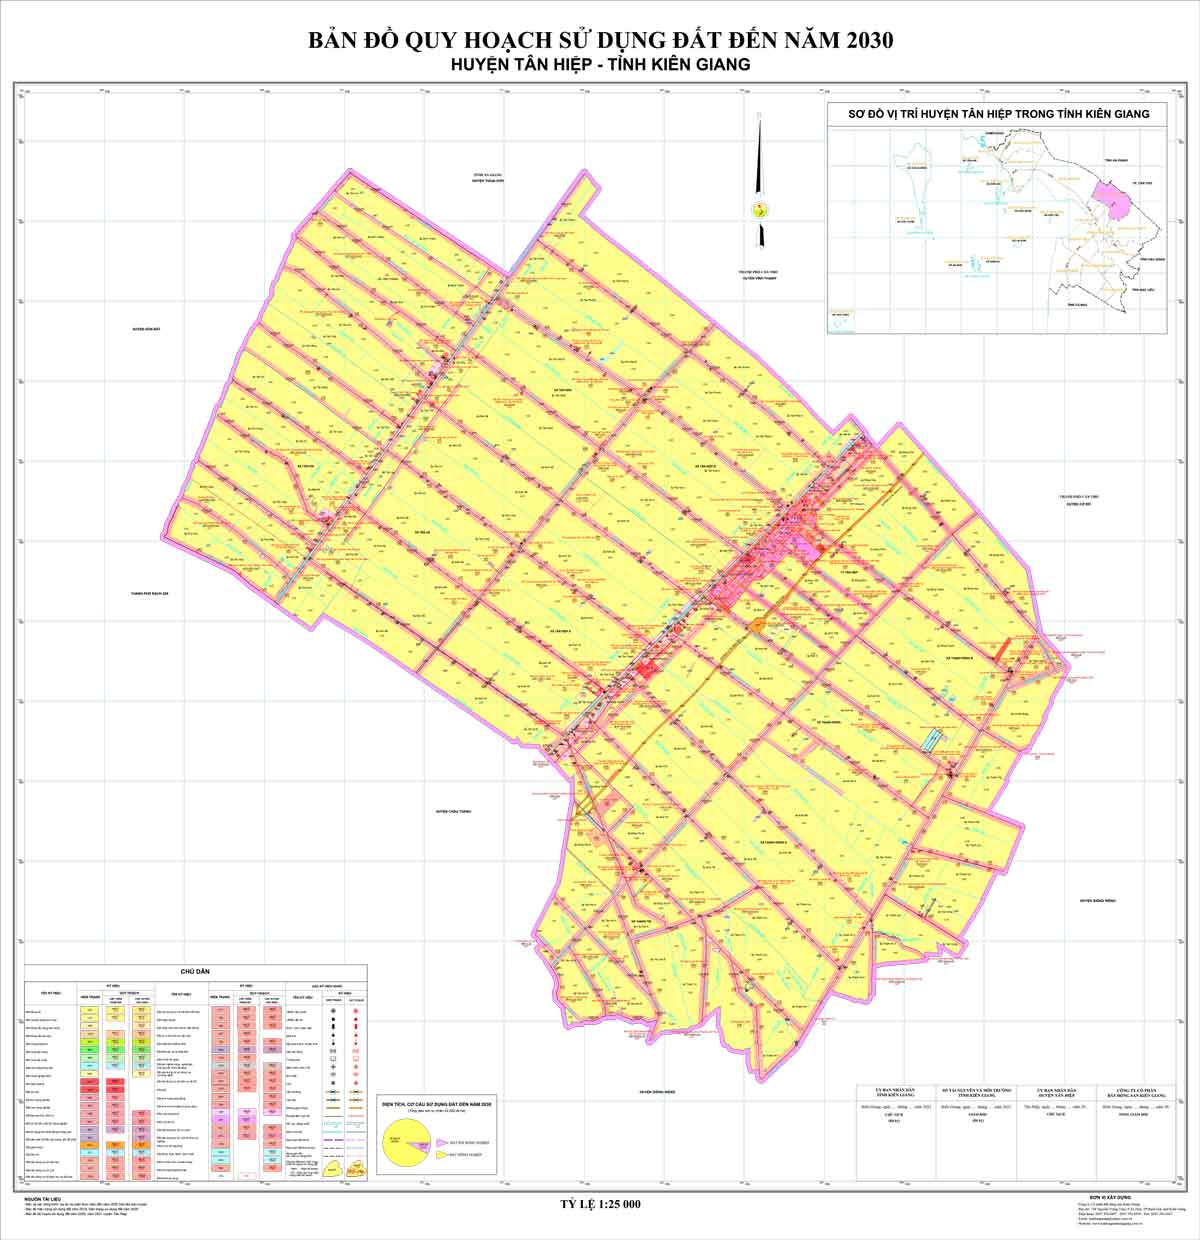 Bản đồ QHSDĐ huyện Tân Hiệp đến năm 2030